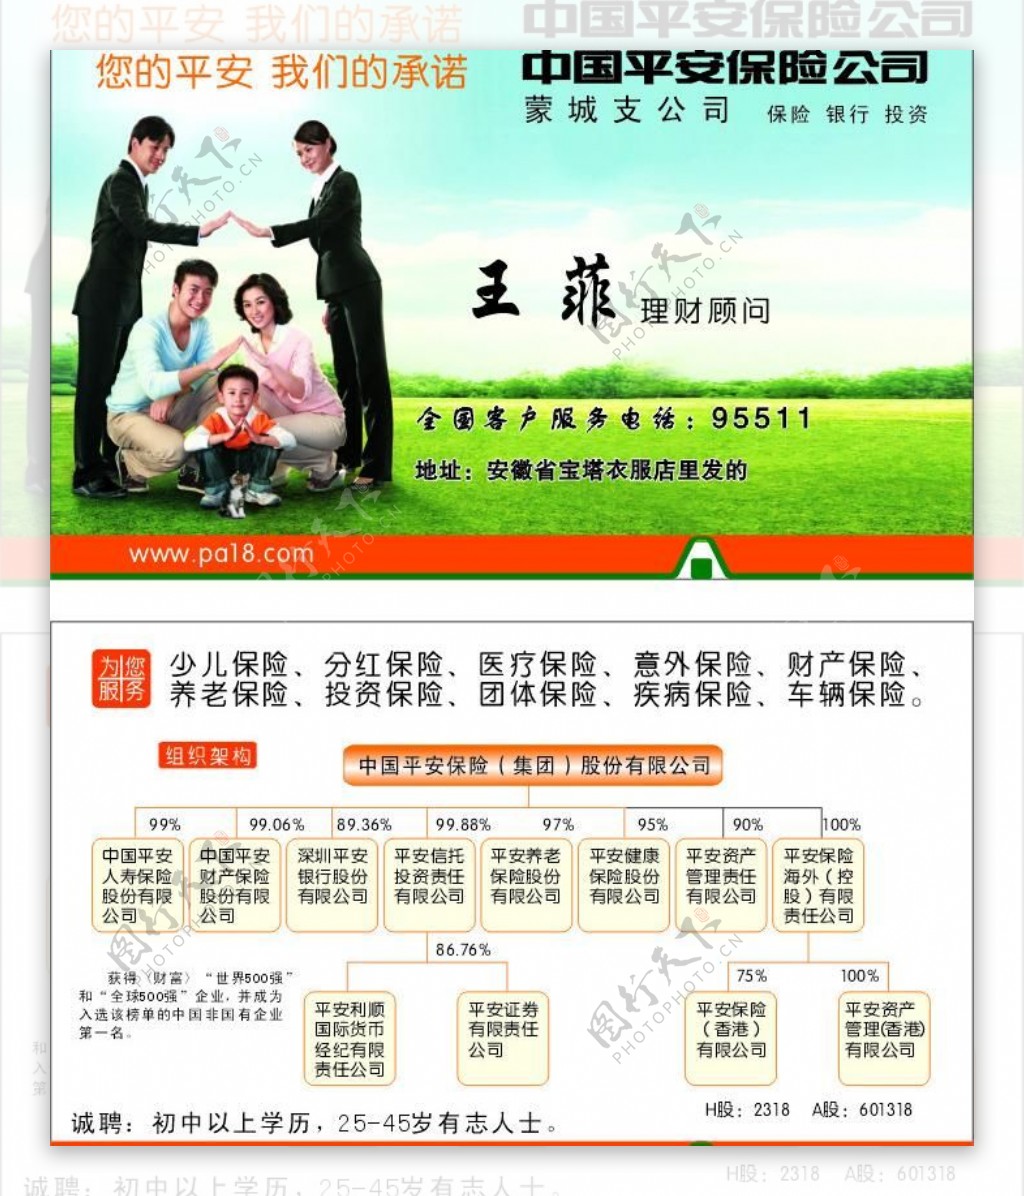 中国平安保险公司名片图片